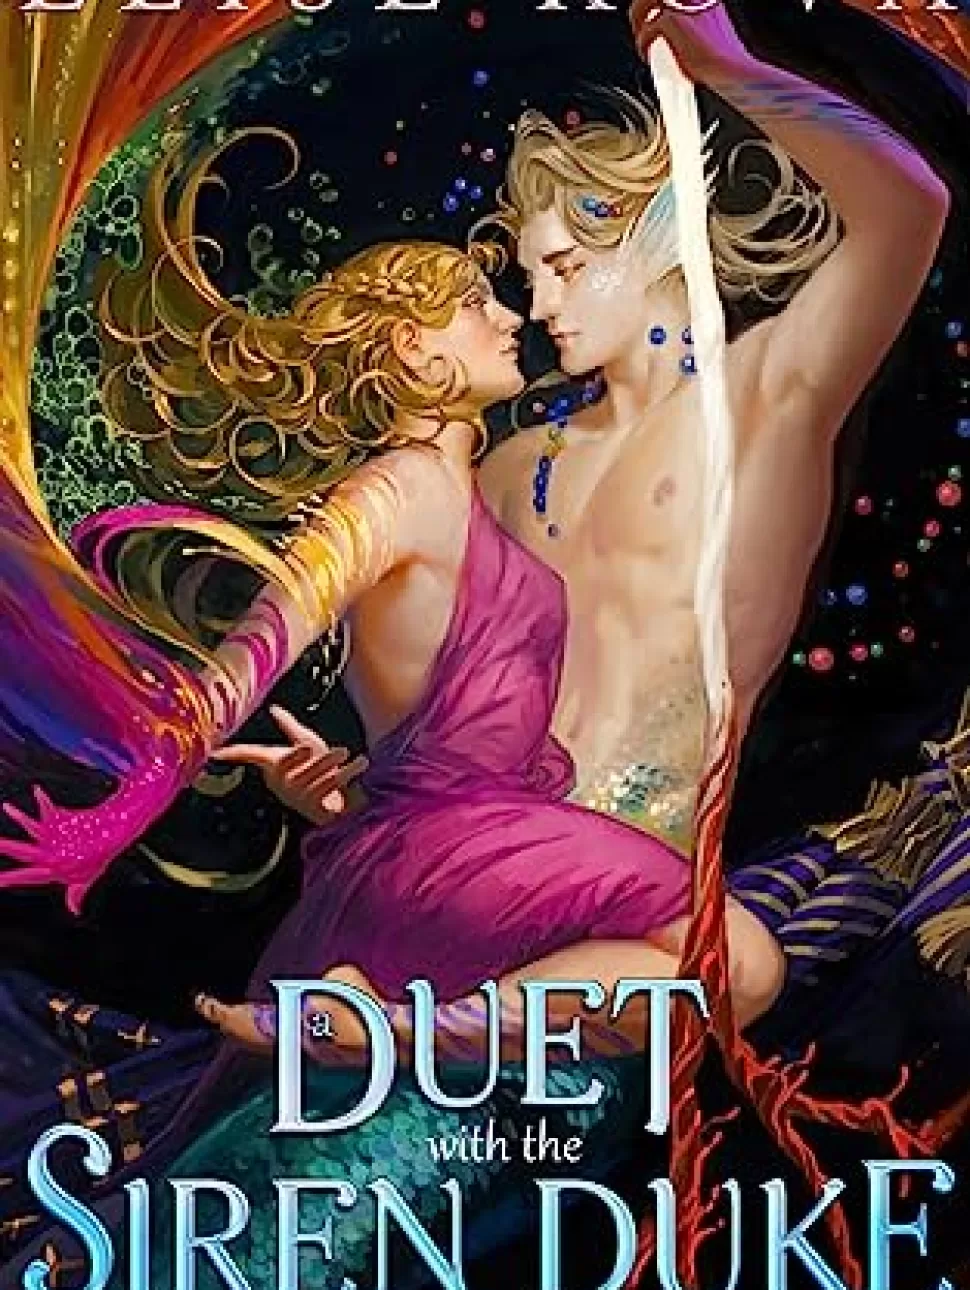 A Duet with the Siren Du